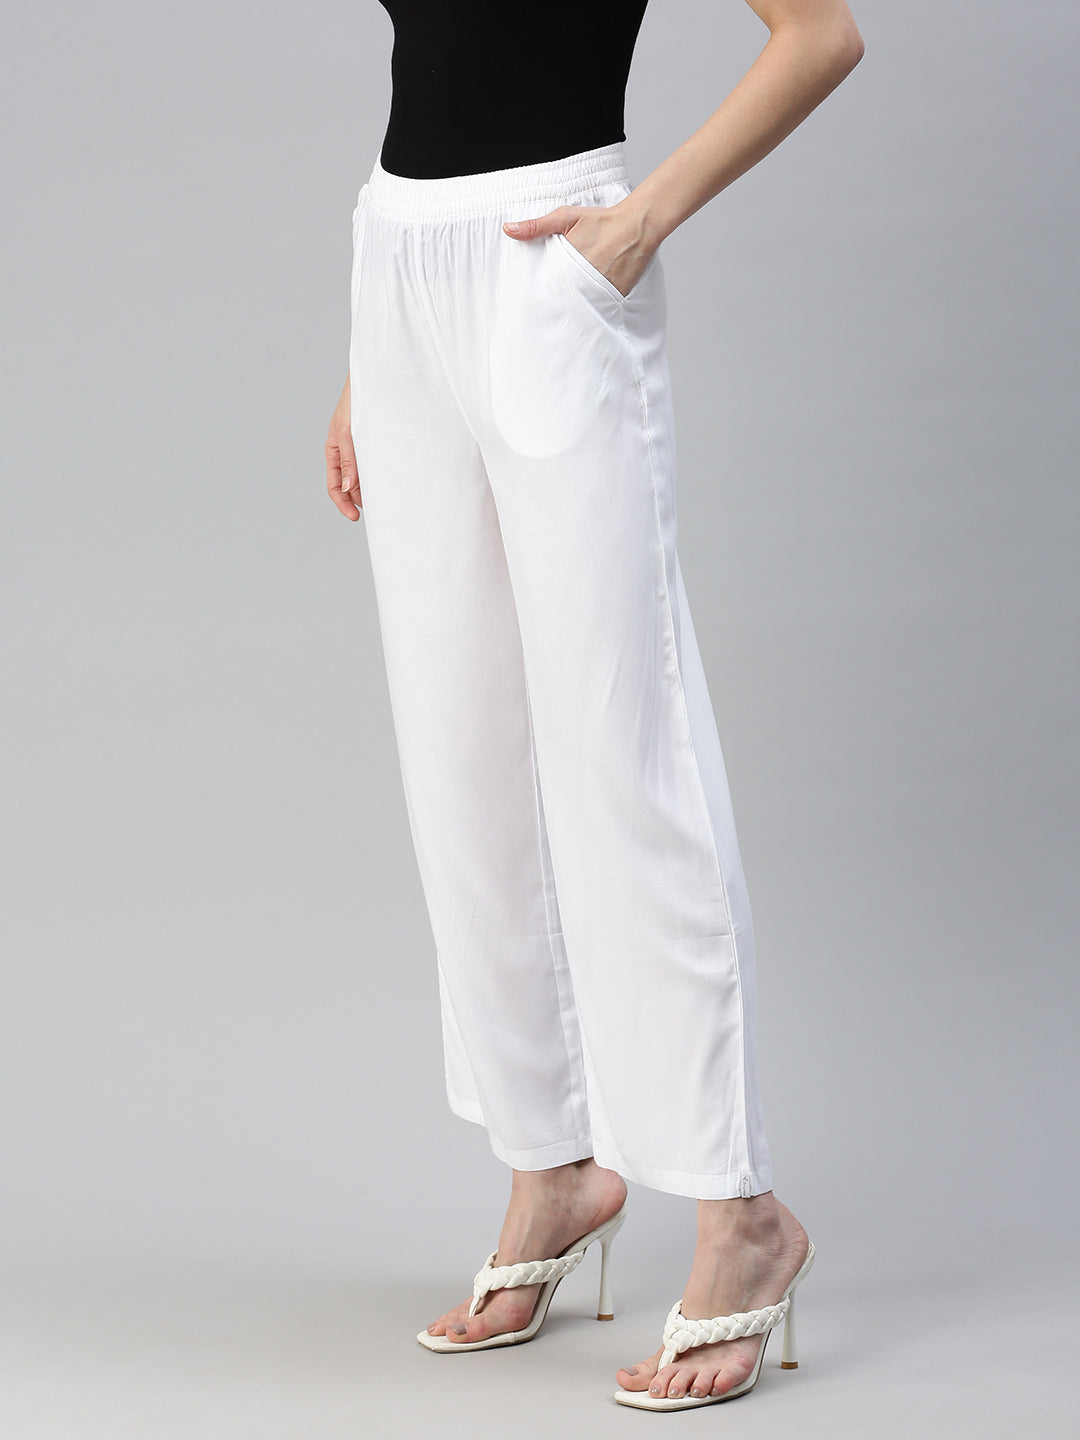 Women's White Wide Leg Pants & Trousers - Express